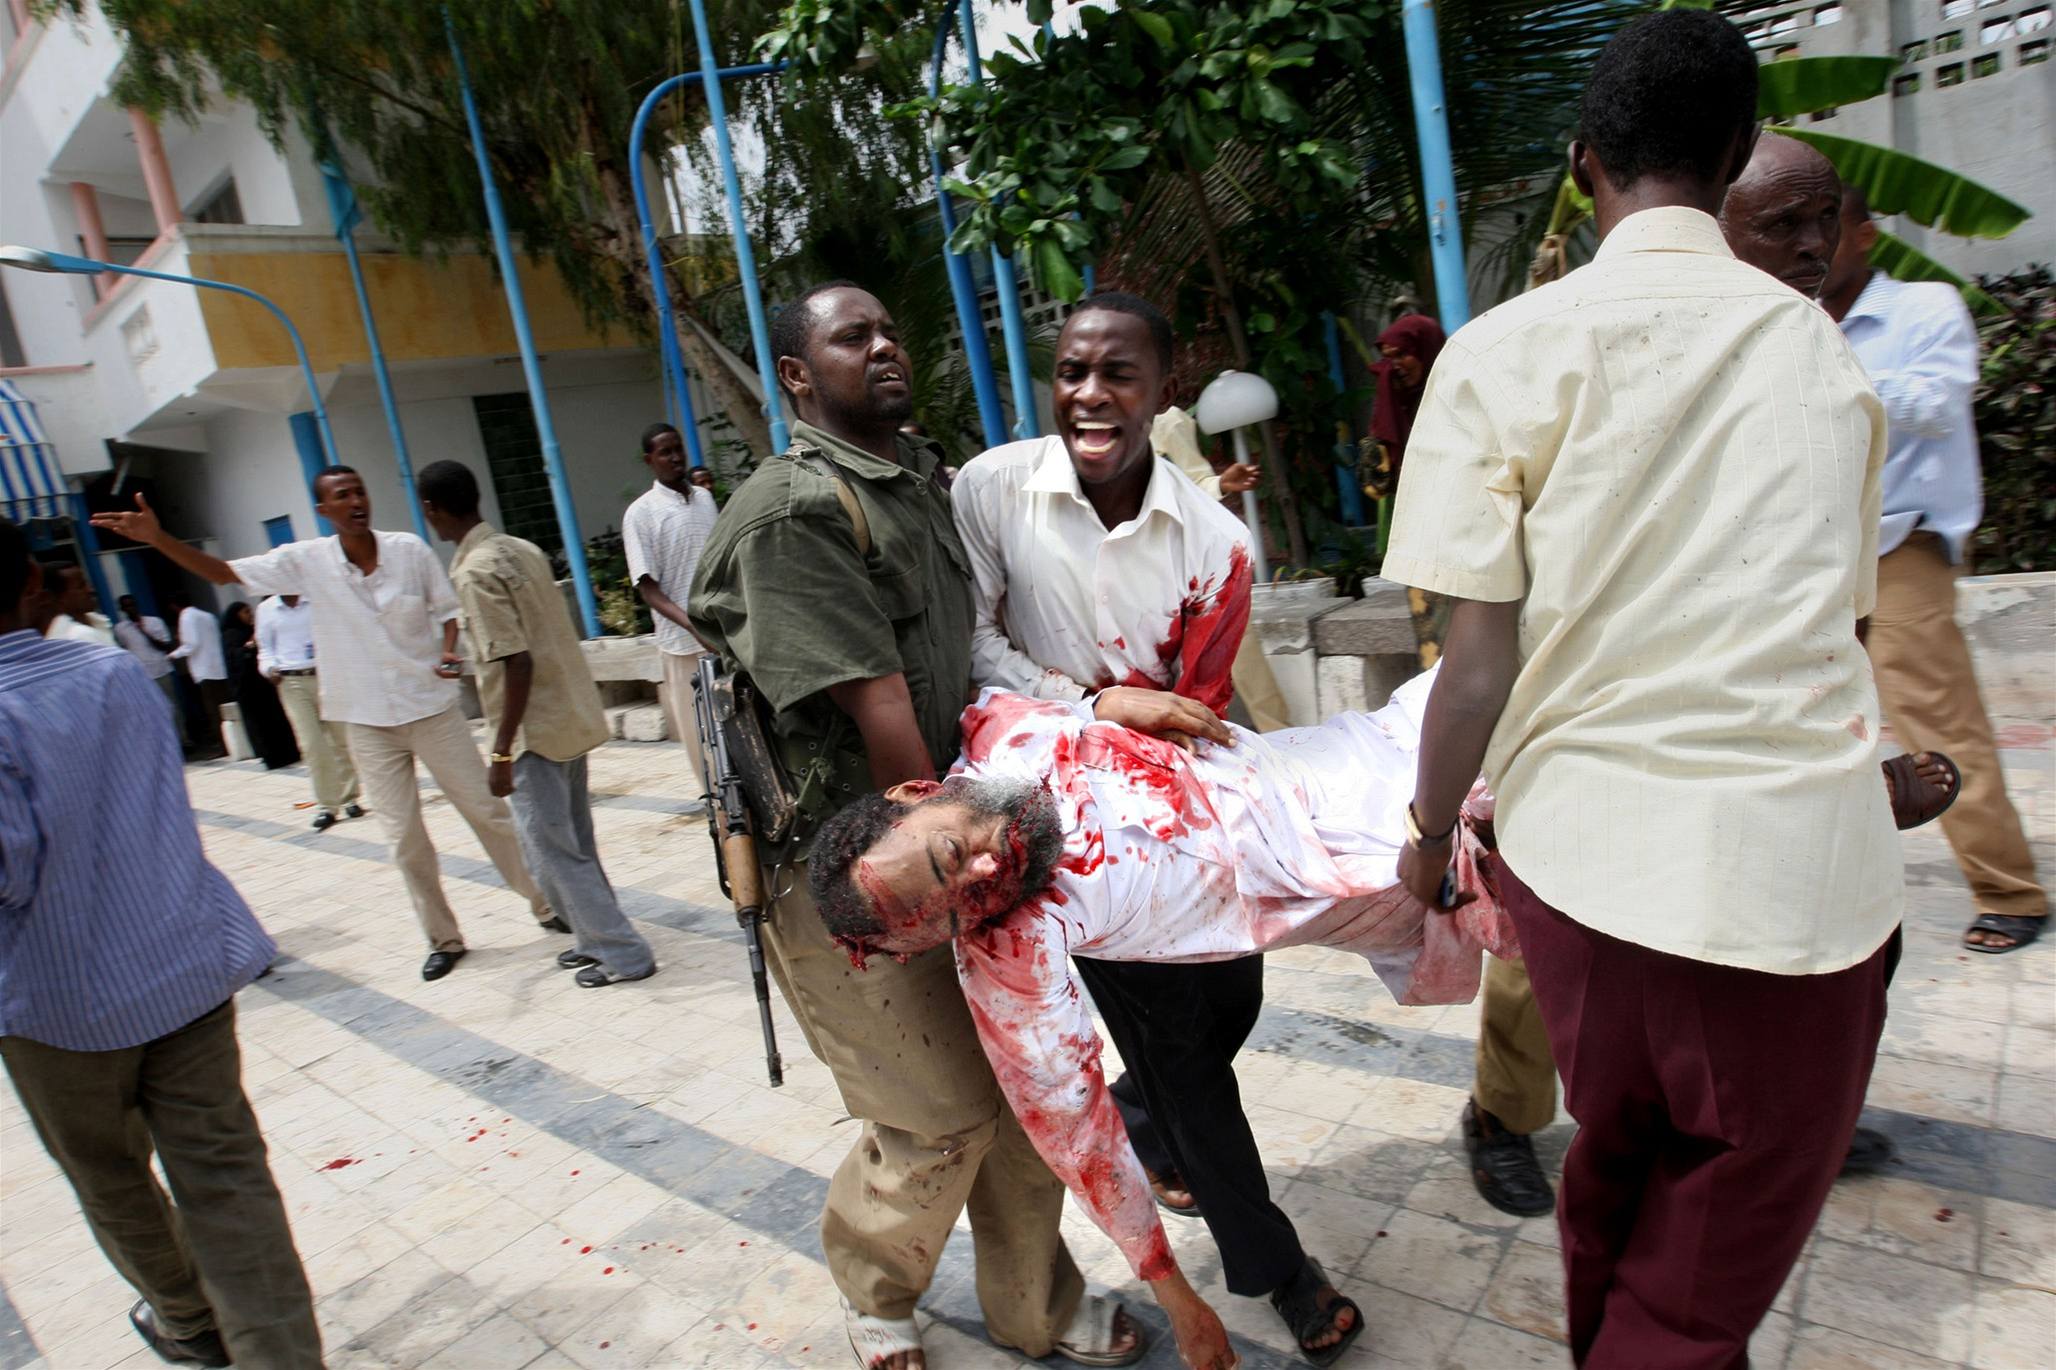 Pi toku v somlskm Mogadiu zahynulo 19 lid vetn t ministr